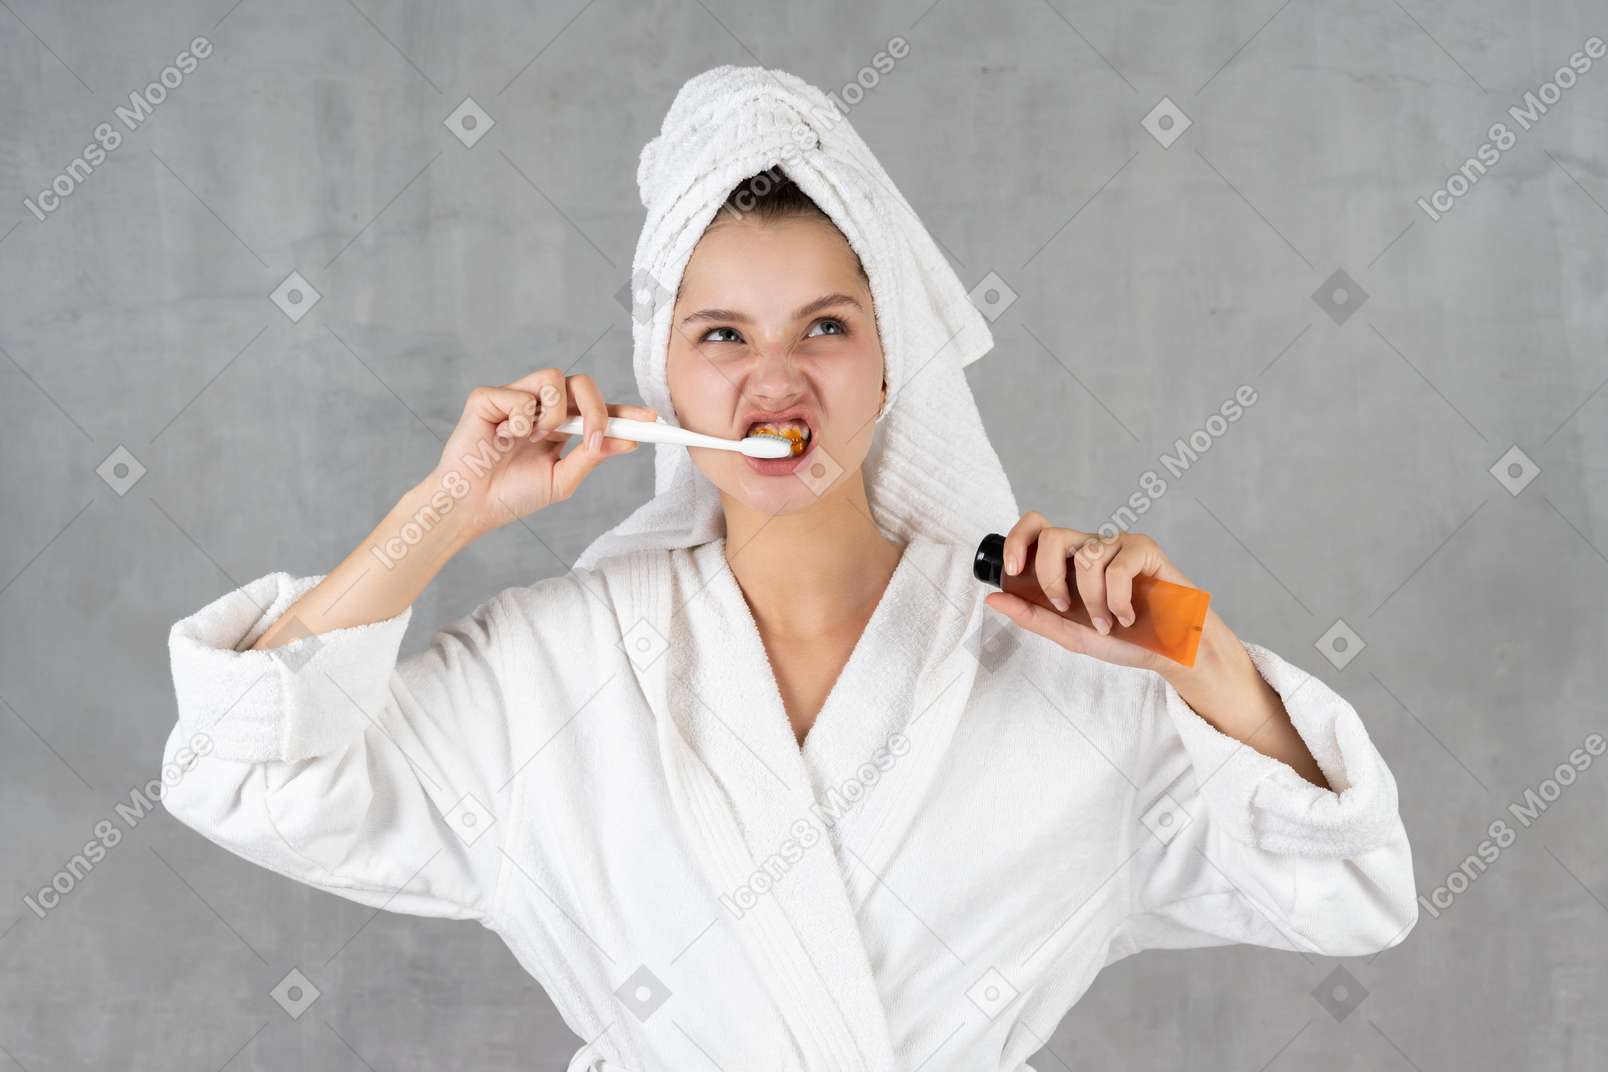 Frau im bademantel grimassen beim zähneputzen